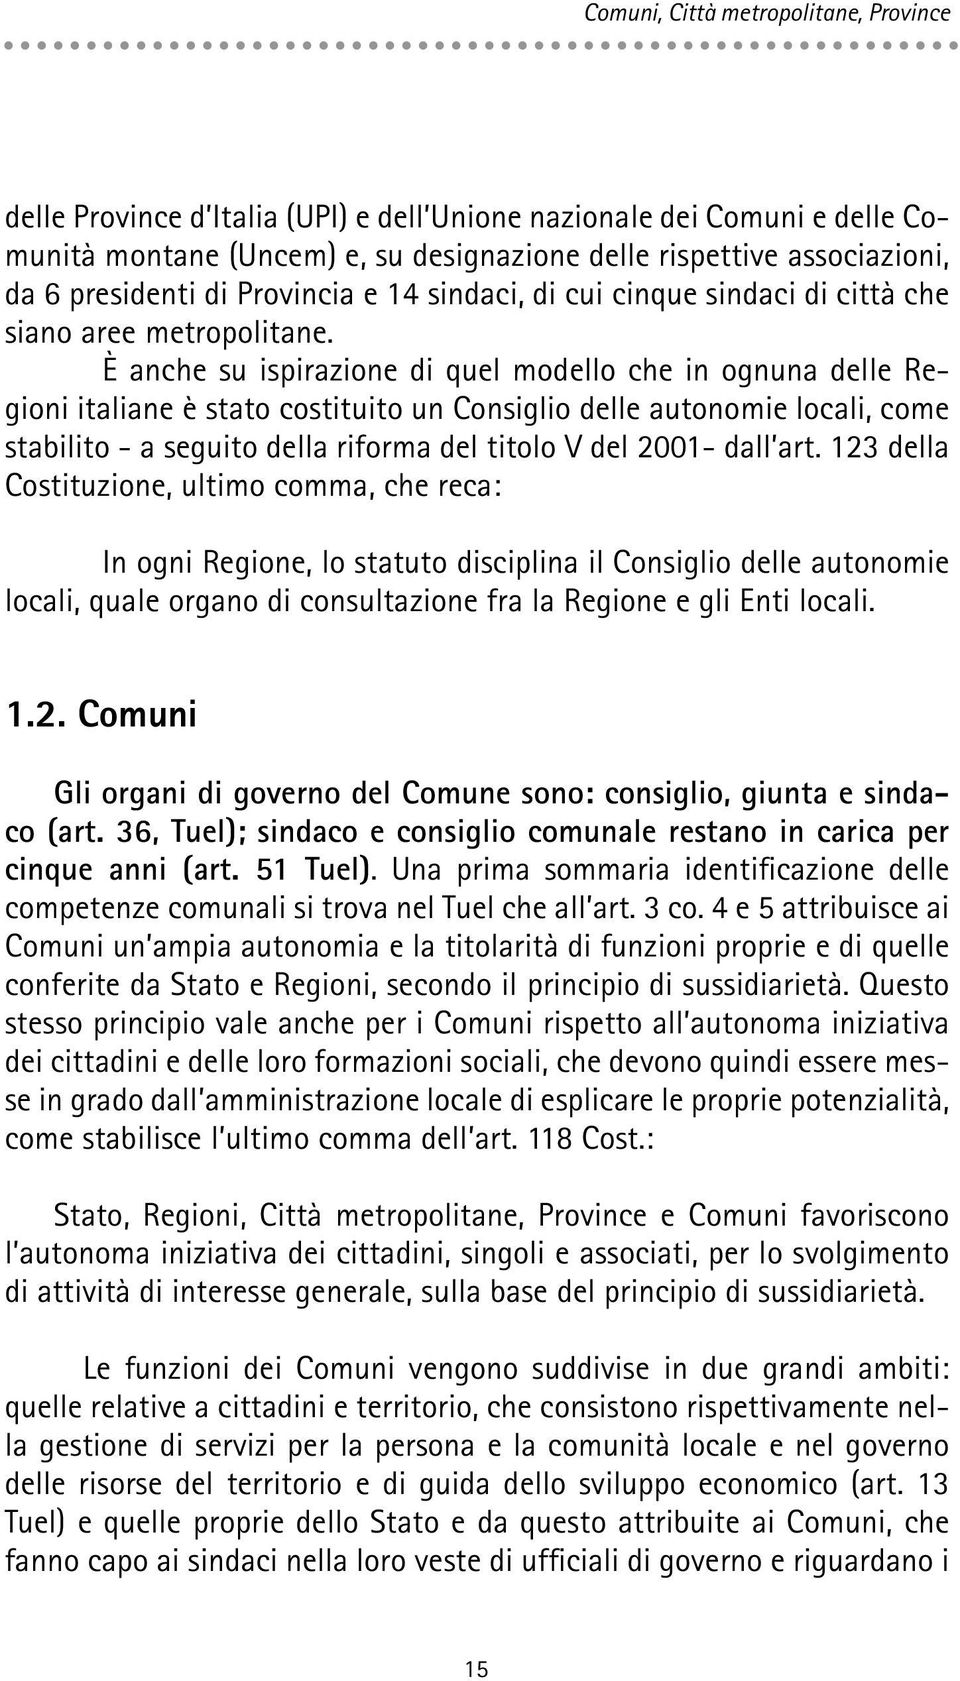 È anche su ispirazione di quel modello che in ognuna delle Regioni italiane è stato costituito un Consiglio delle autonomie locali, come stabilito - a seguito della riforma del titolo V del 2001-